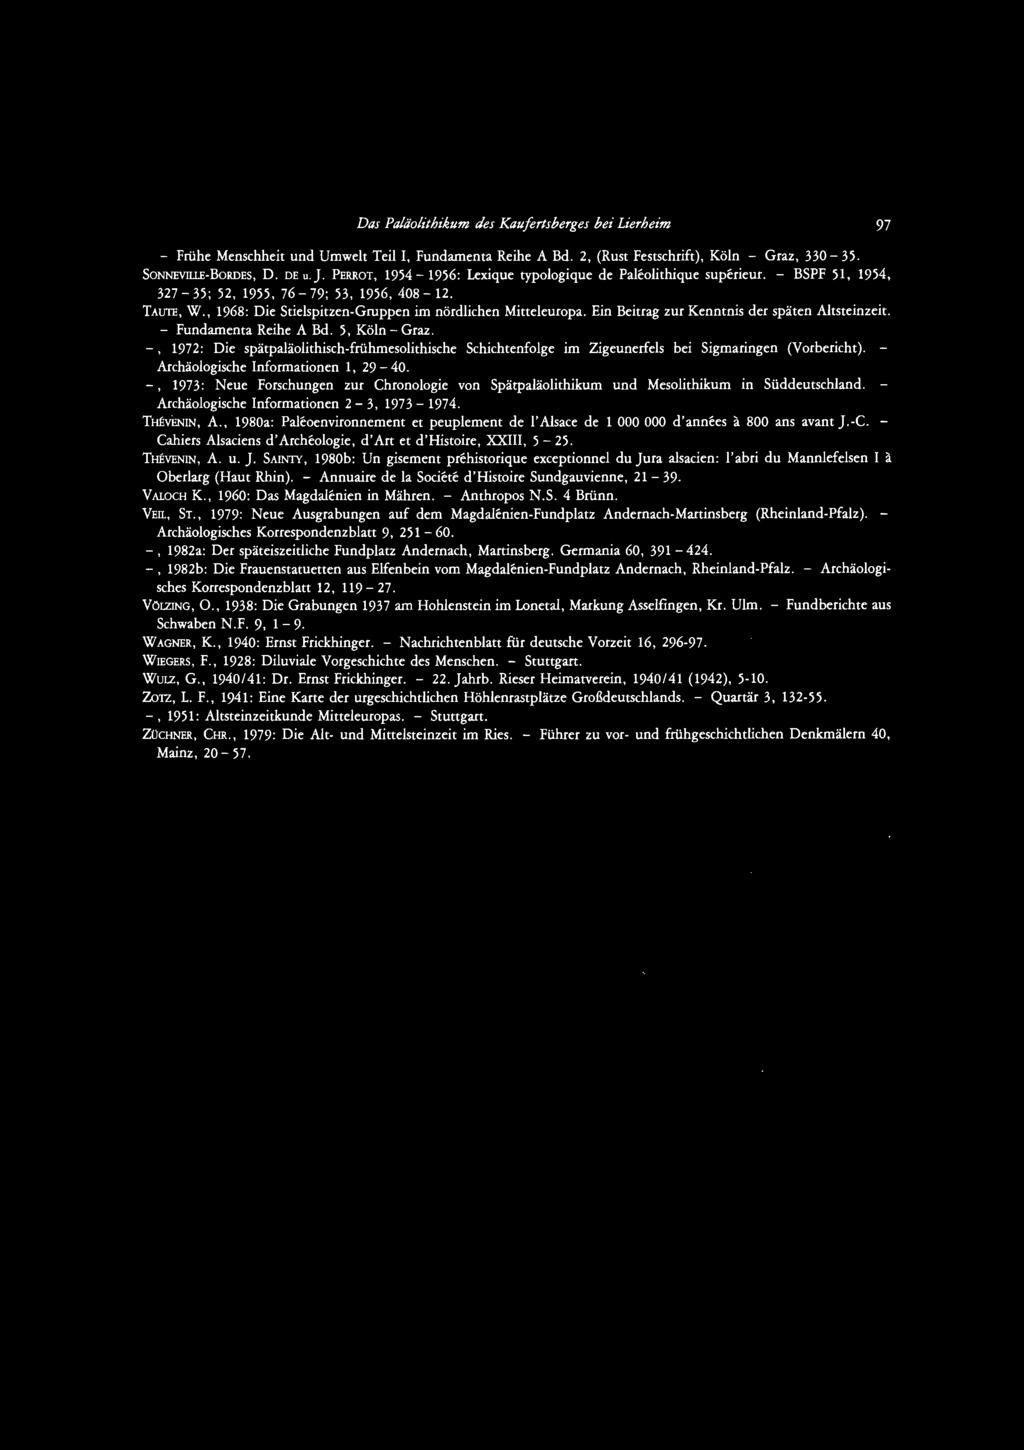 Ein Beitrag zur Kenntnis der späten Altsteinzeit. - Fundamenta Reihe A Bd. 5, Köln- Graz. -, 1972: Die spätpaläolithisch-frühmesolithische Schichtenfolge im Zigeunerfels bei Sigmaringen (Vorbericht).